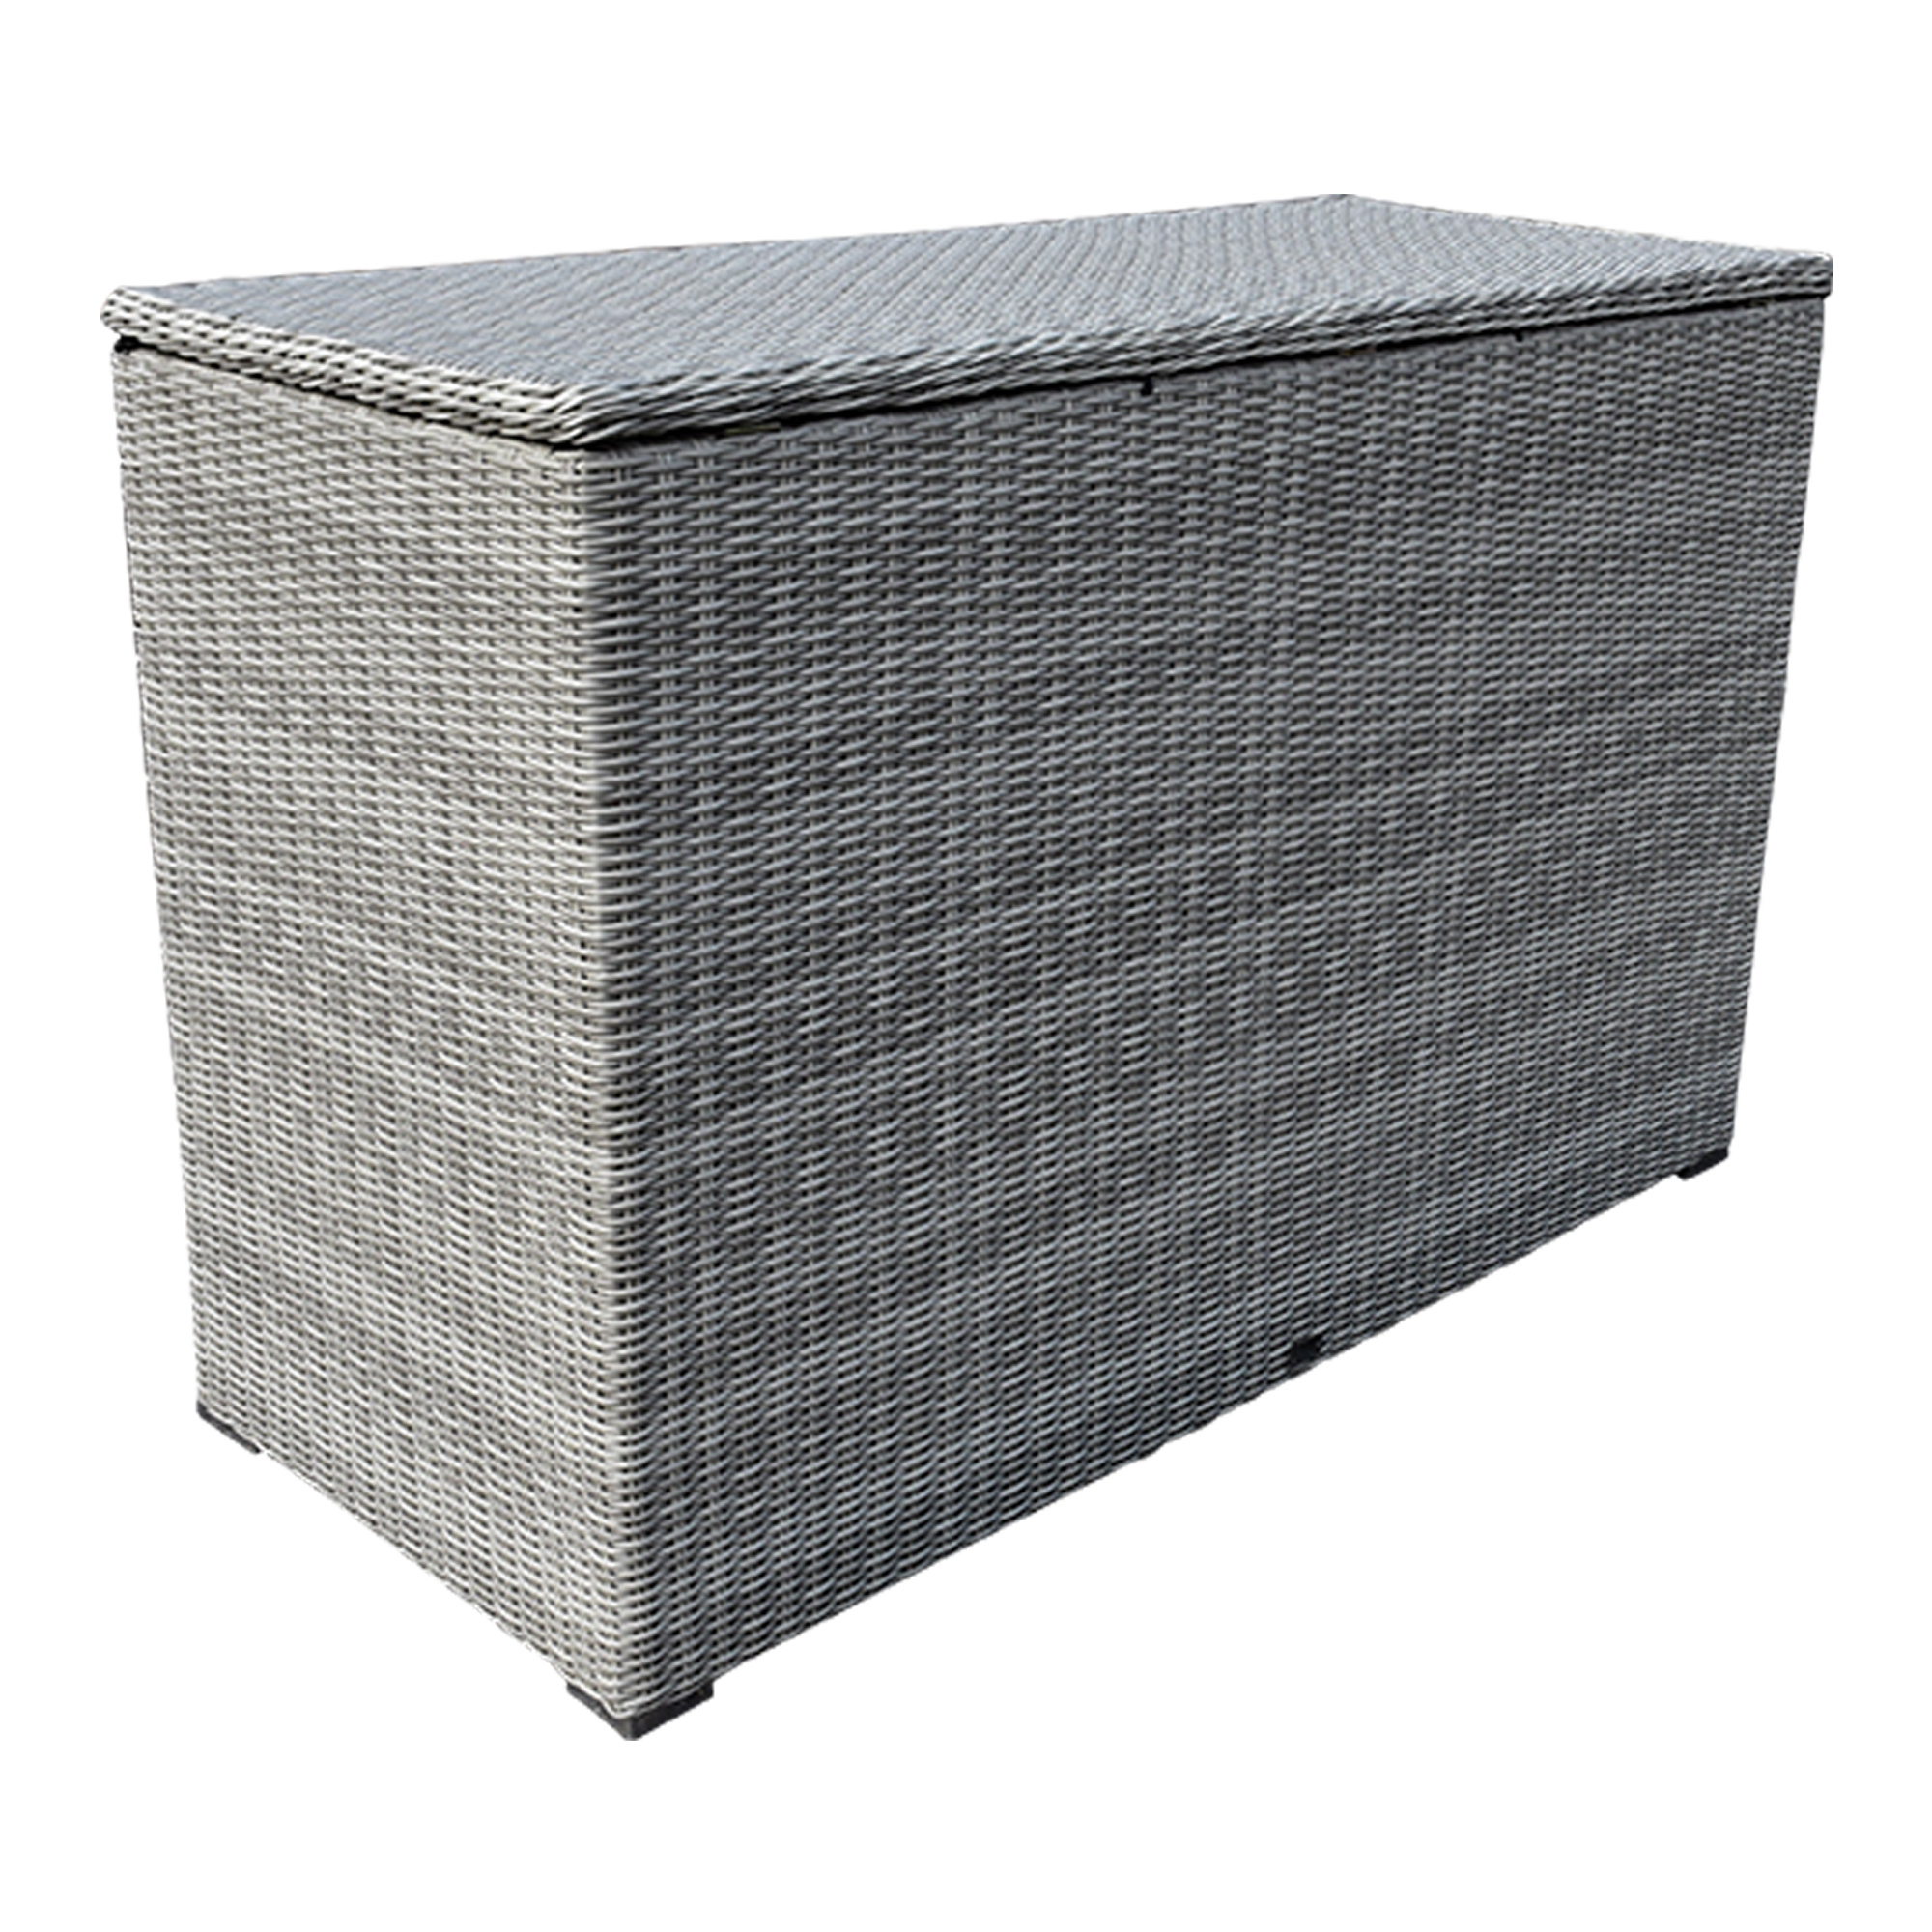 Kussenbox groot 167x70xH106 cm wit grijs - Outdoor Tuinmeubelen